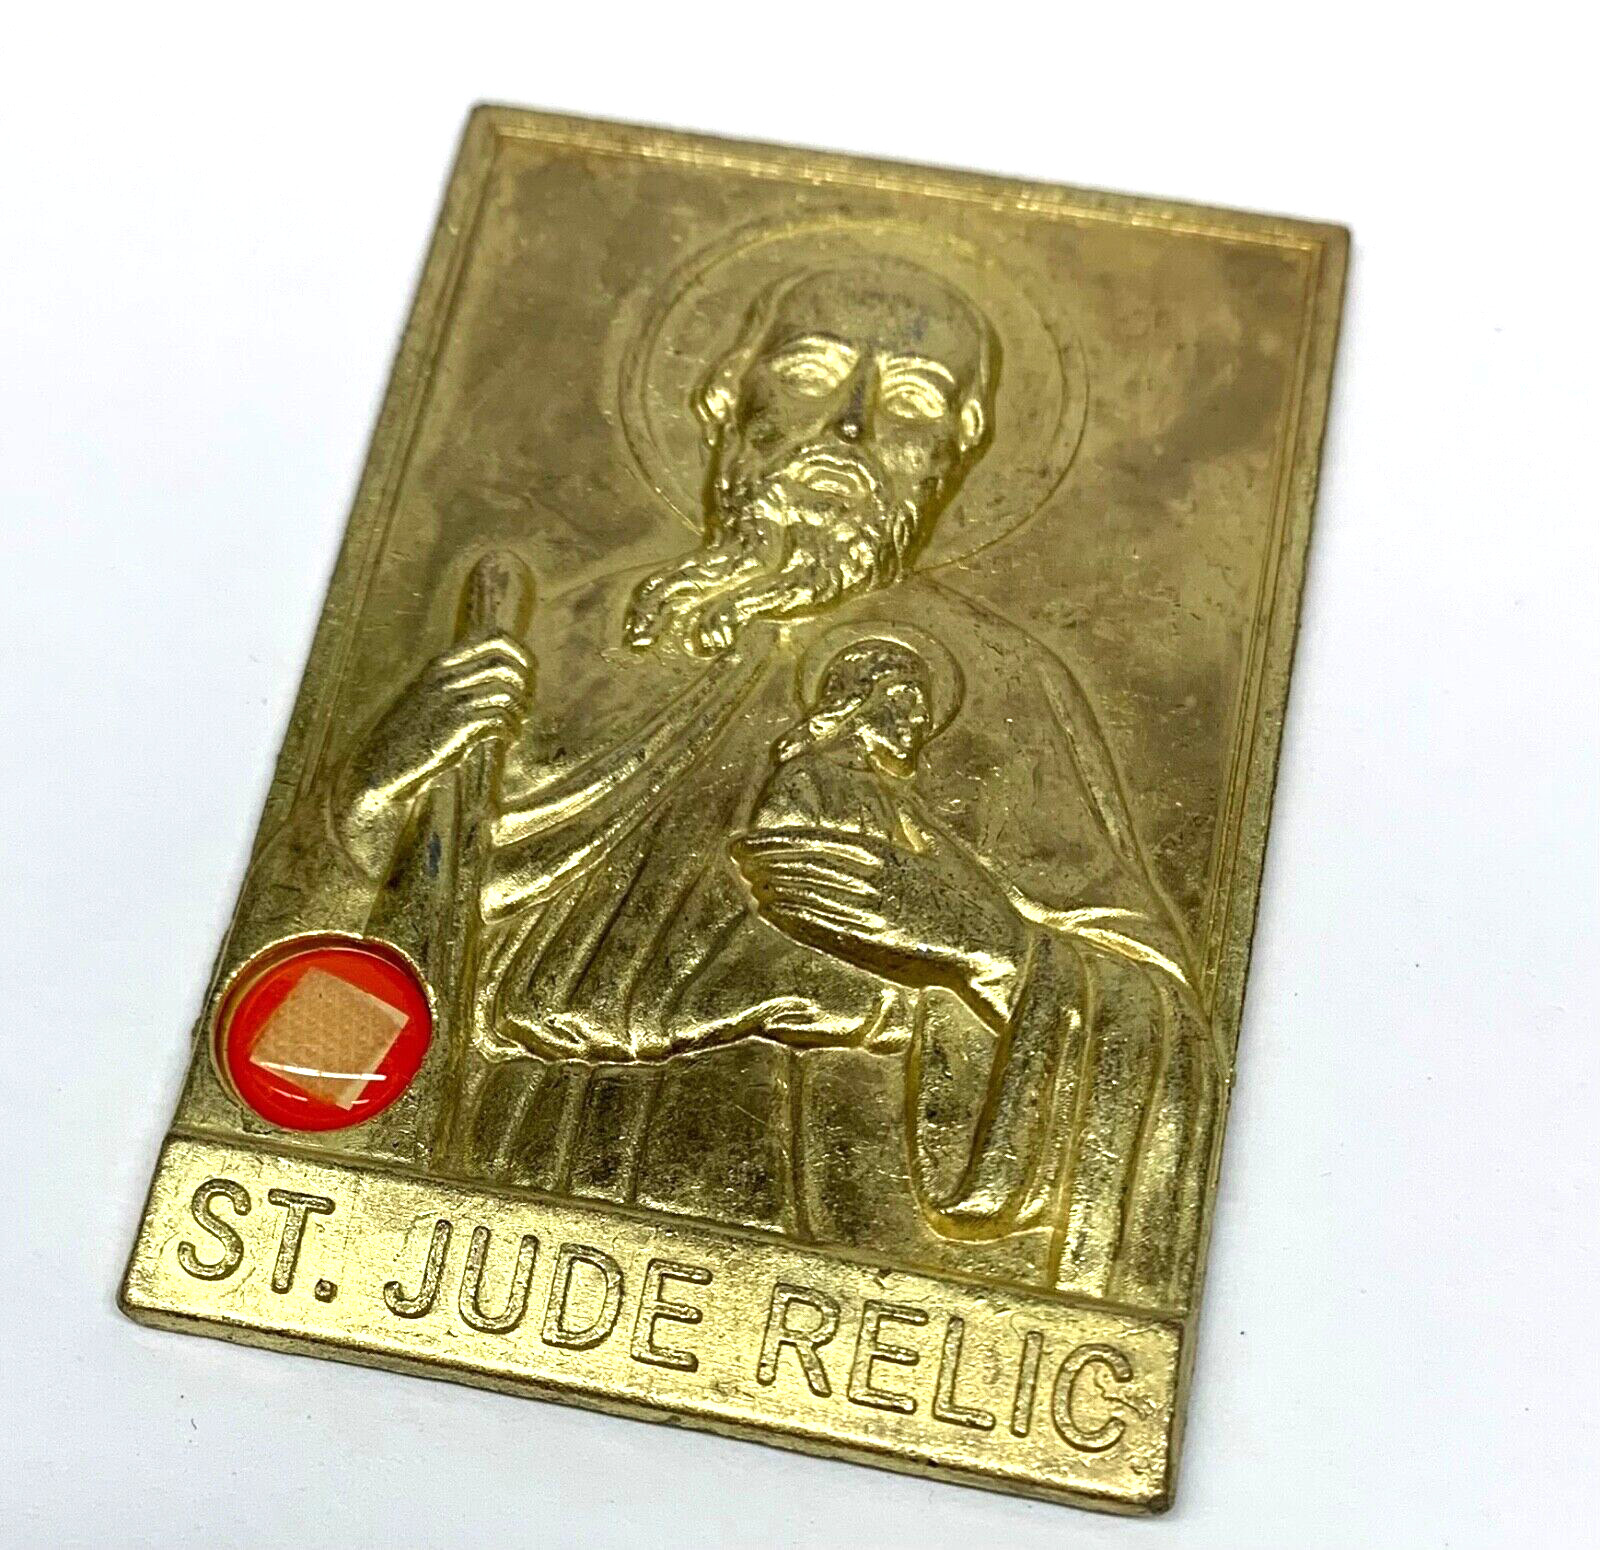 Vintage St. Jude Relic Metal Emblem 2 1/8” H